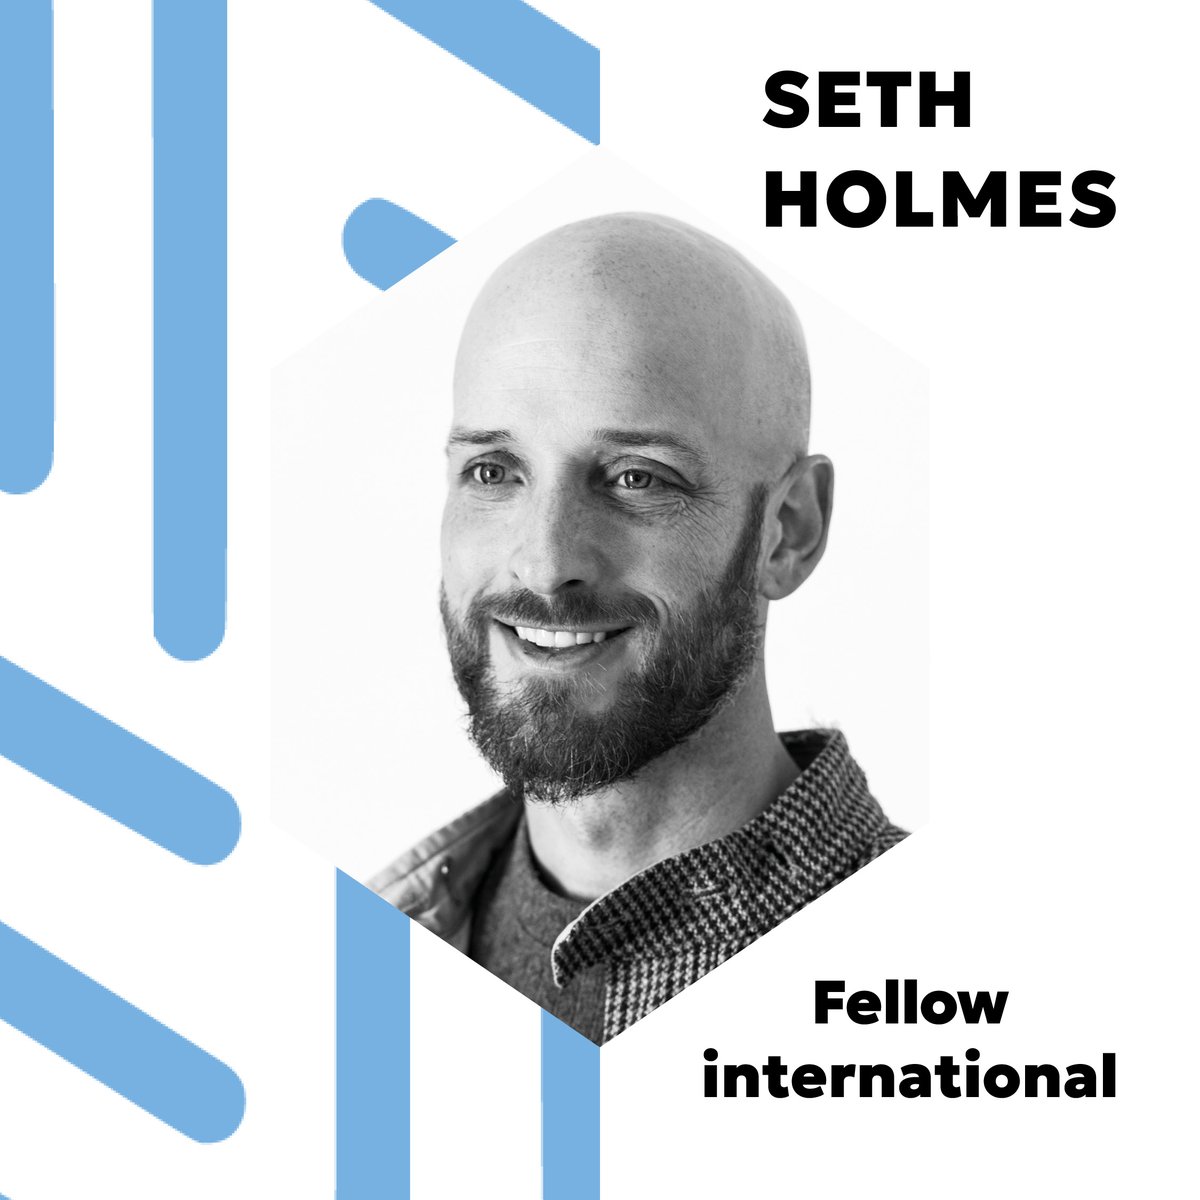 Nous sommes très heureux d'accueillir Seth Holmes, Professeur à l’Université Berkeley en Californie du 4 au 14 mai au sein de notre département Health ! @UCBerkeley @UCBerkeleySPH